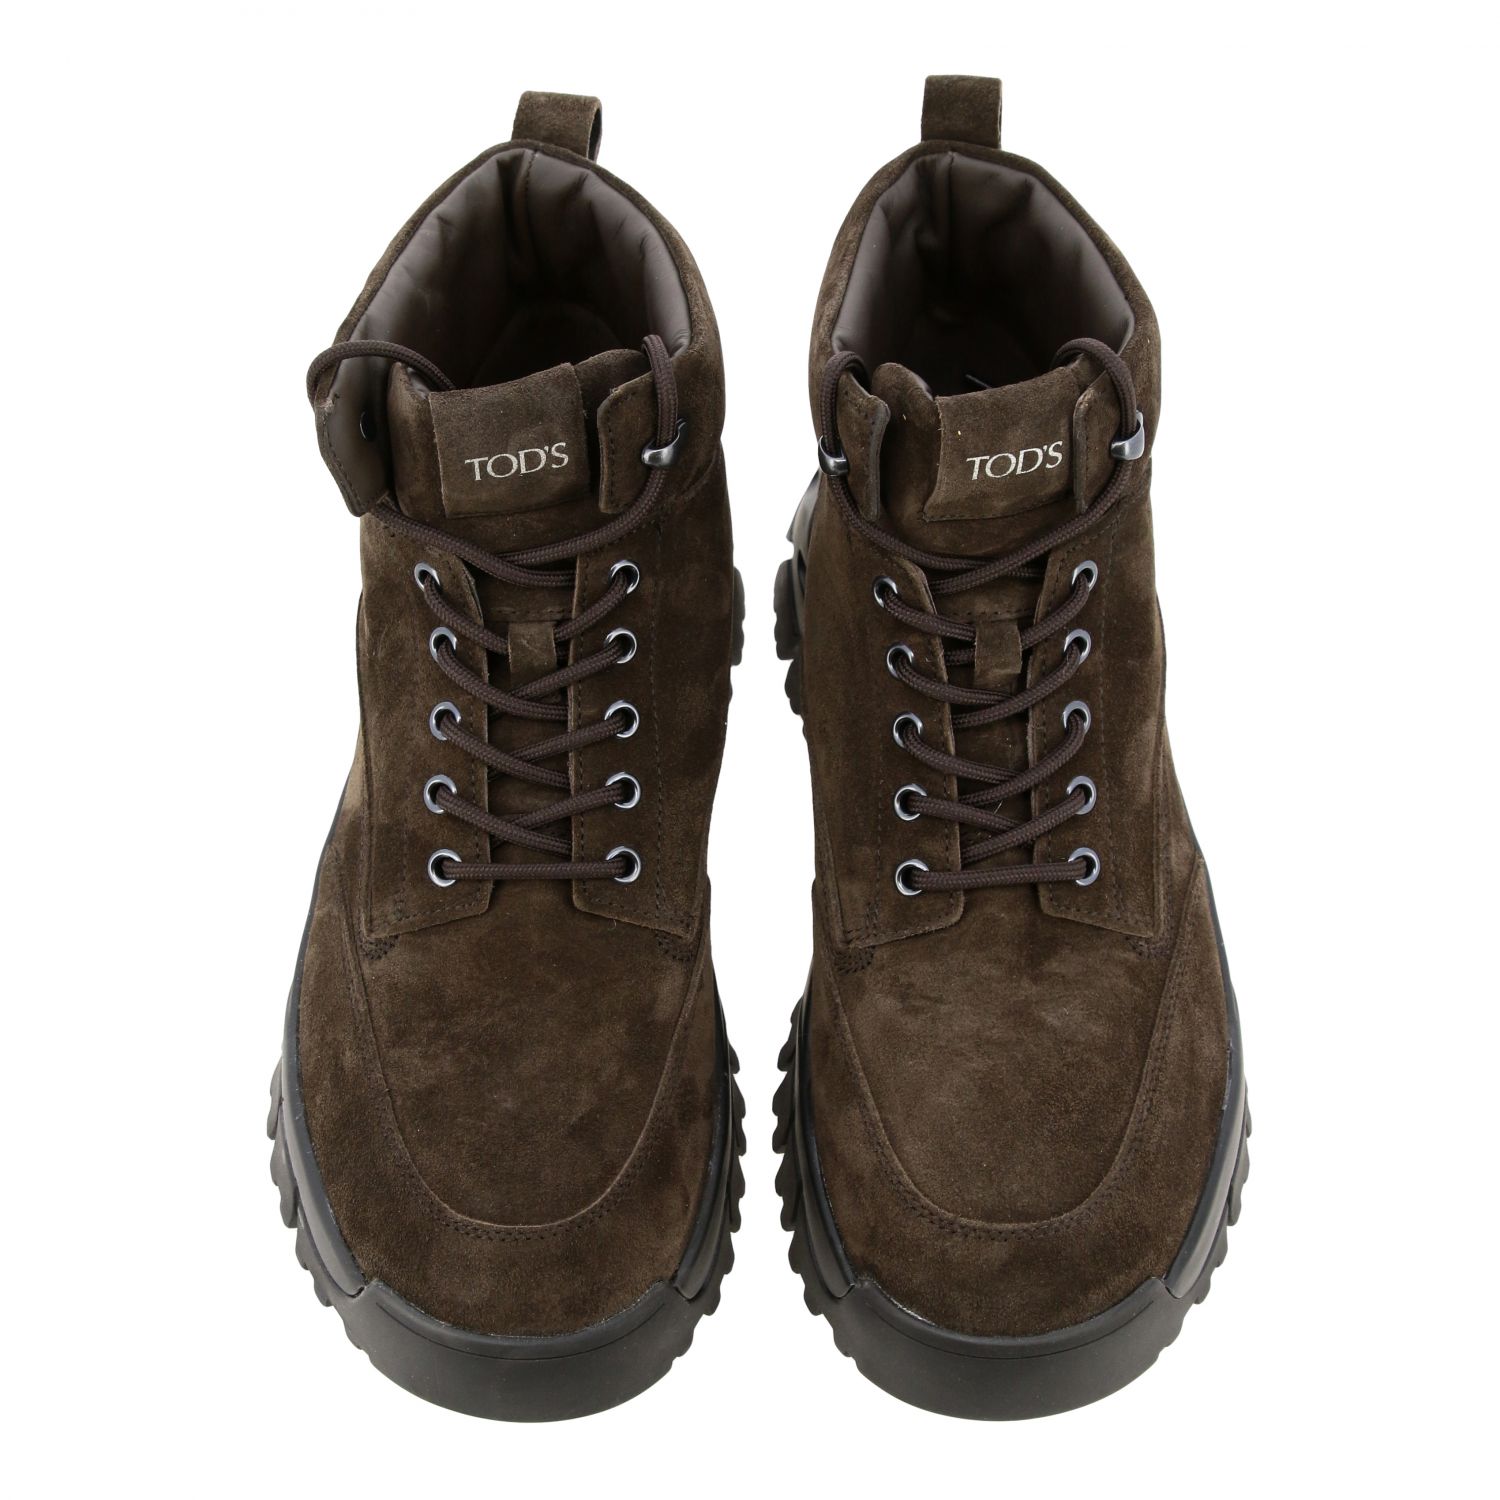 Botas Tod's: Zapatos hombre Tod's marrón oscuro 3